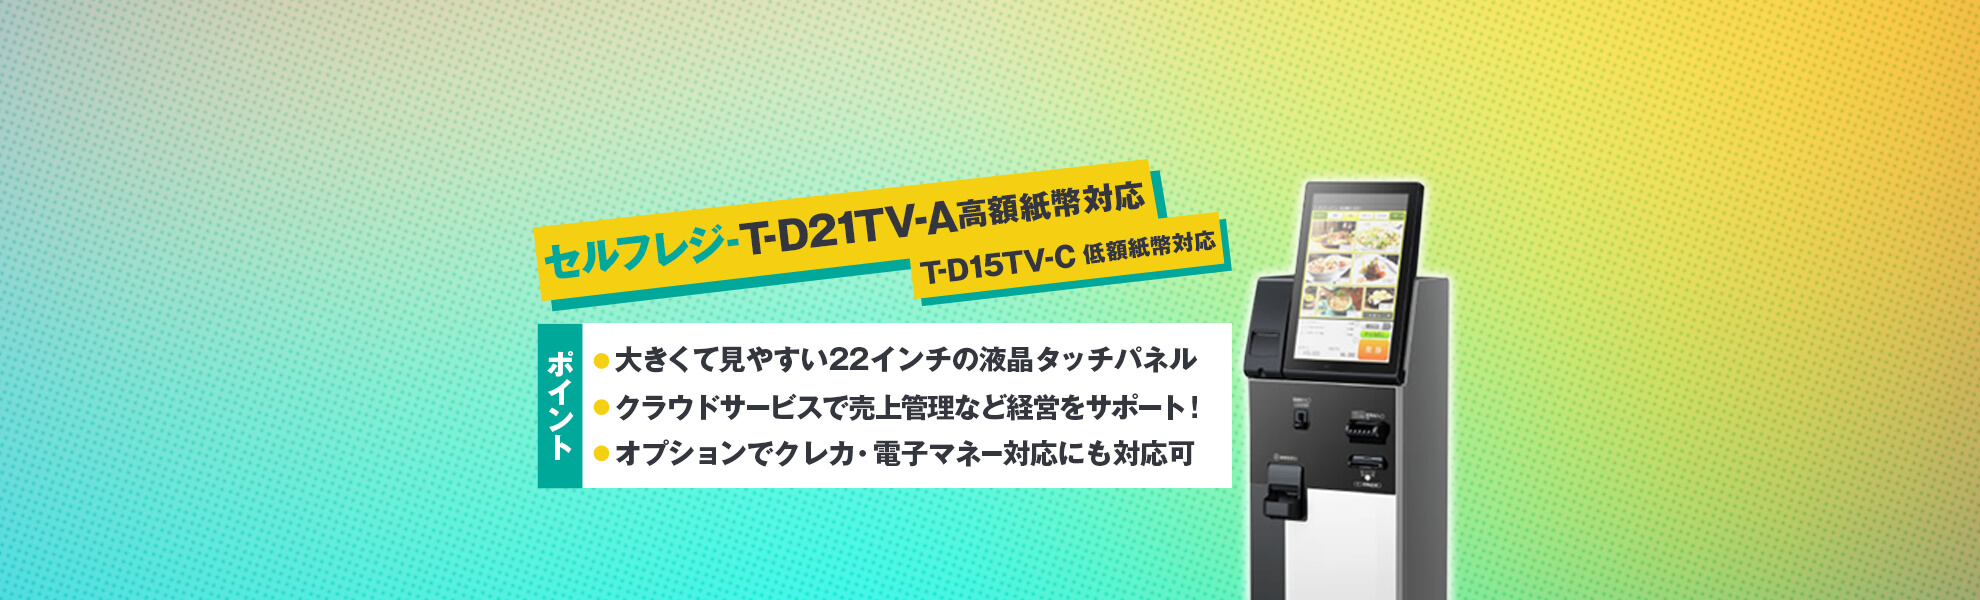 セルフレジタイプ T-D21TV-A